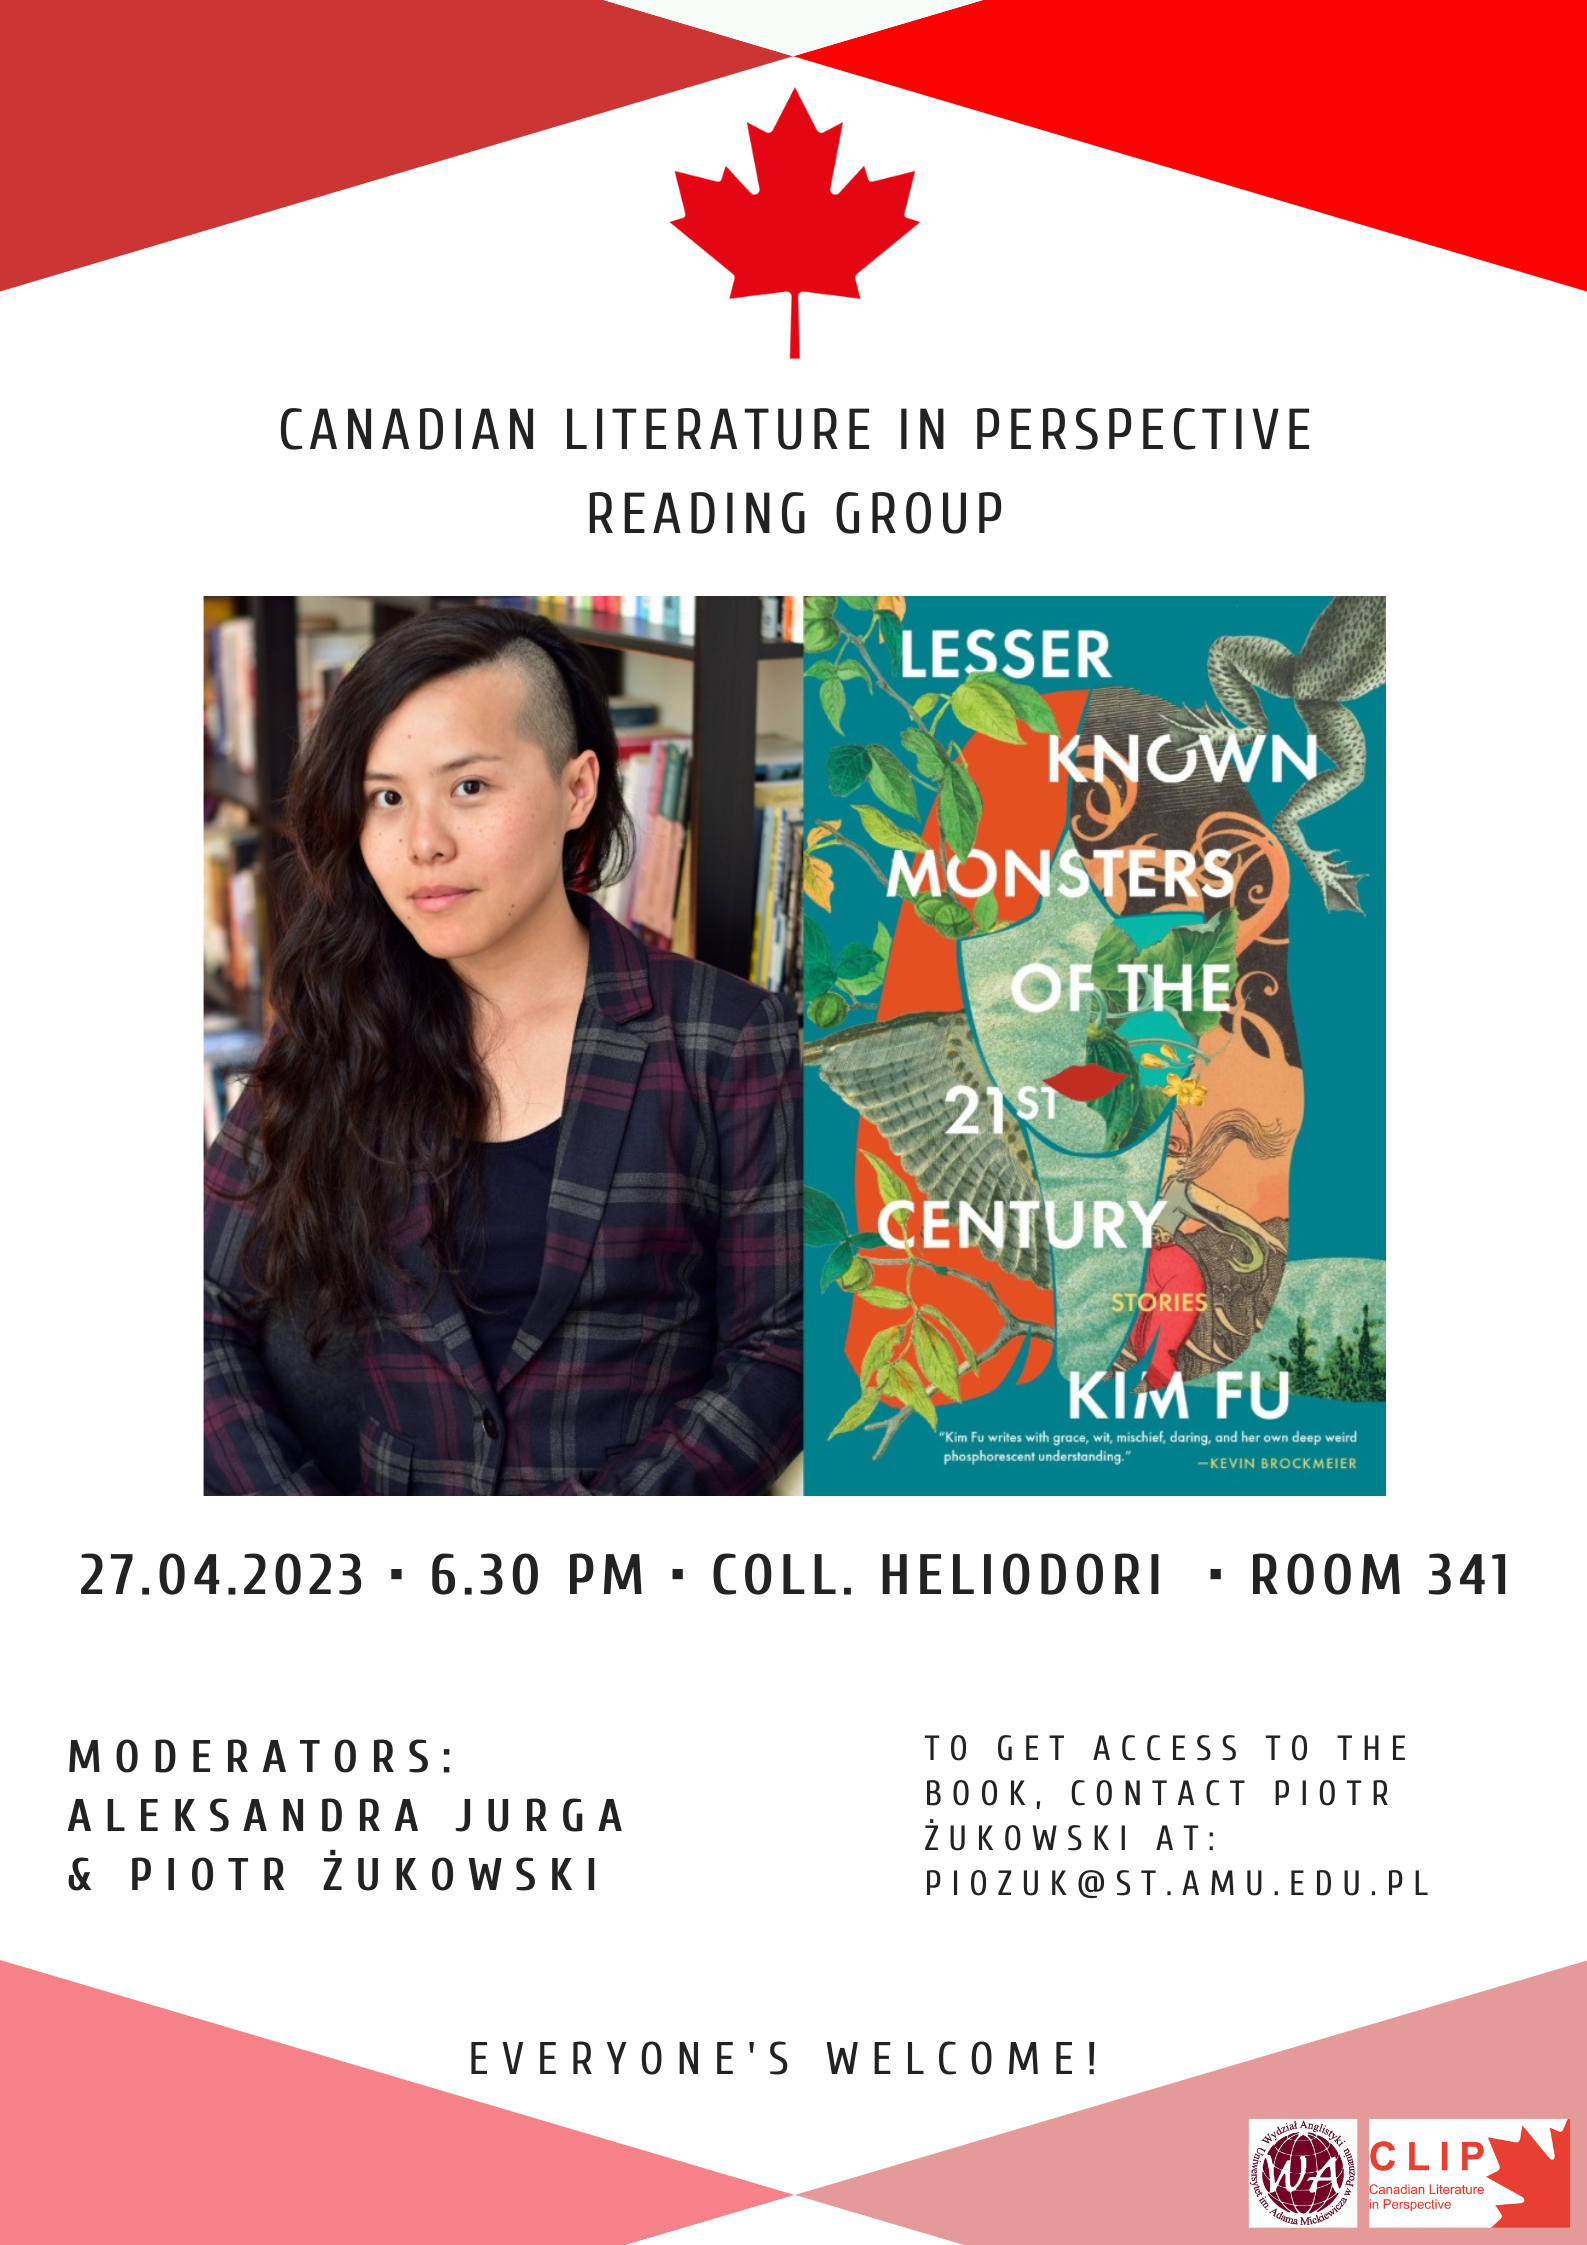 Plakat informujący o nadchodzącym spotkaniu koła naukowego Canadian Literature in Perspective